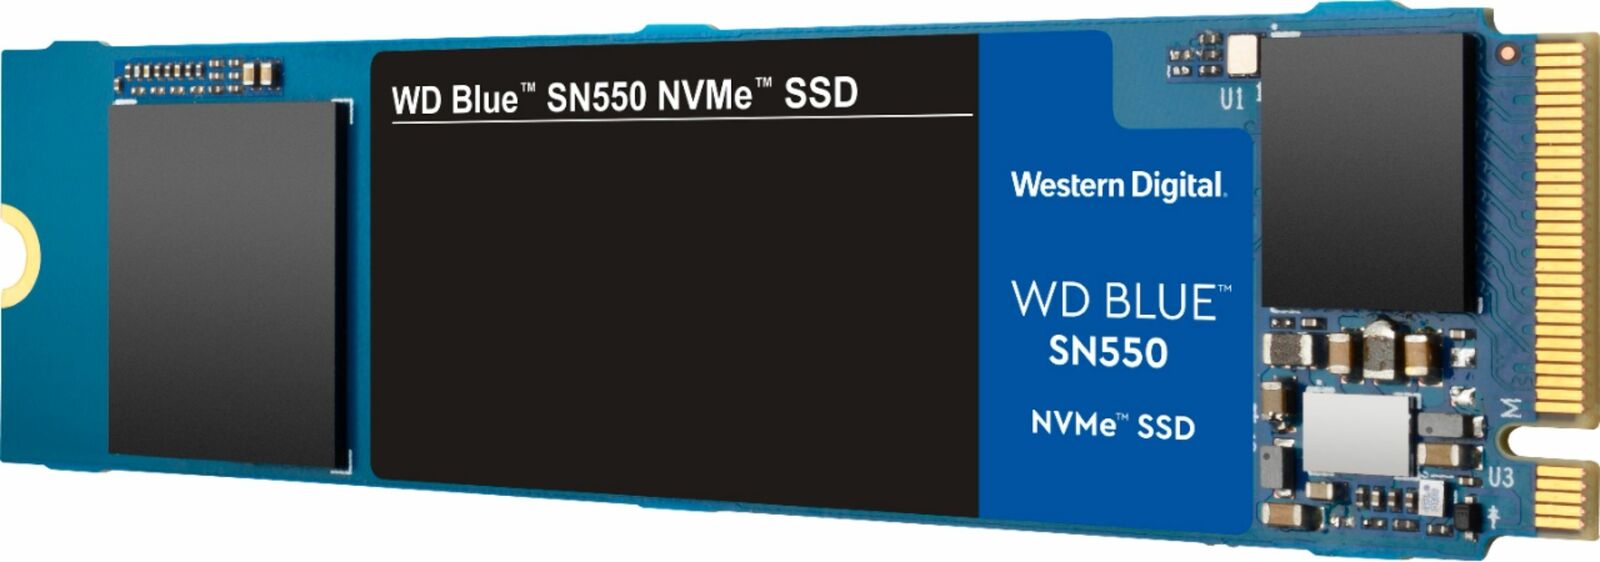 500GB WD Blue PCIe Gen 3 x4 NVMe Internal SSD $43 + Free S/H